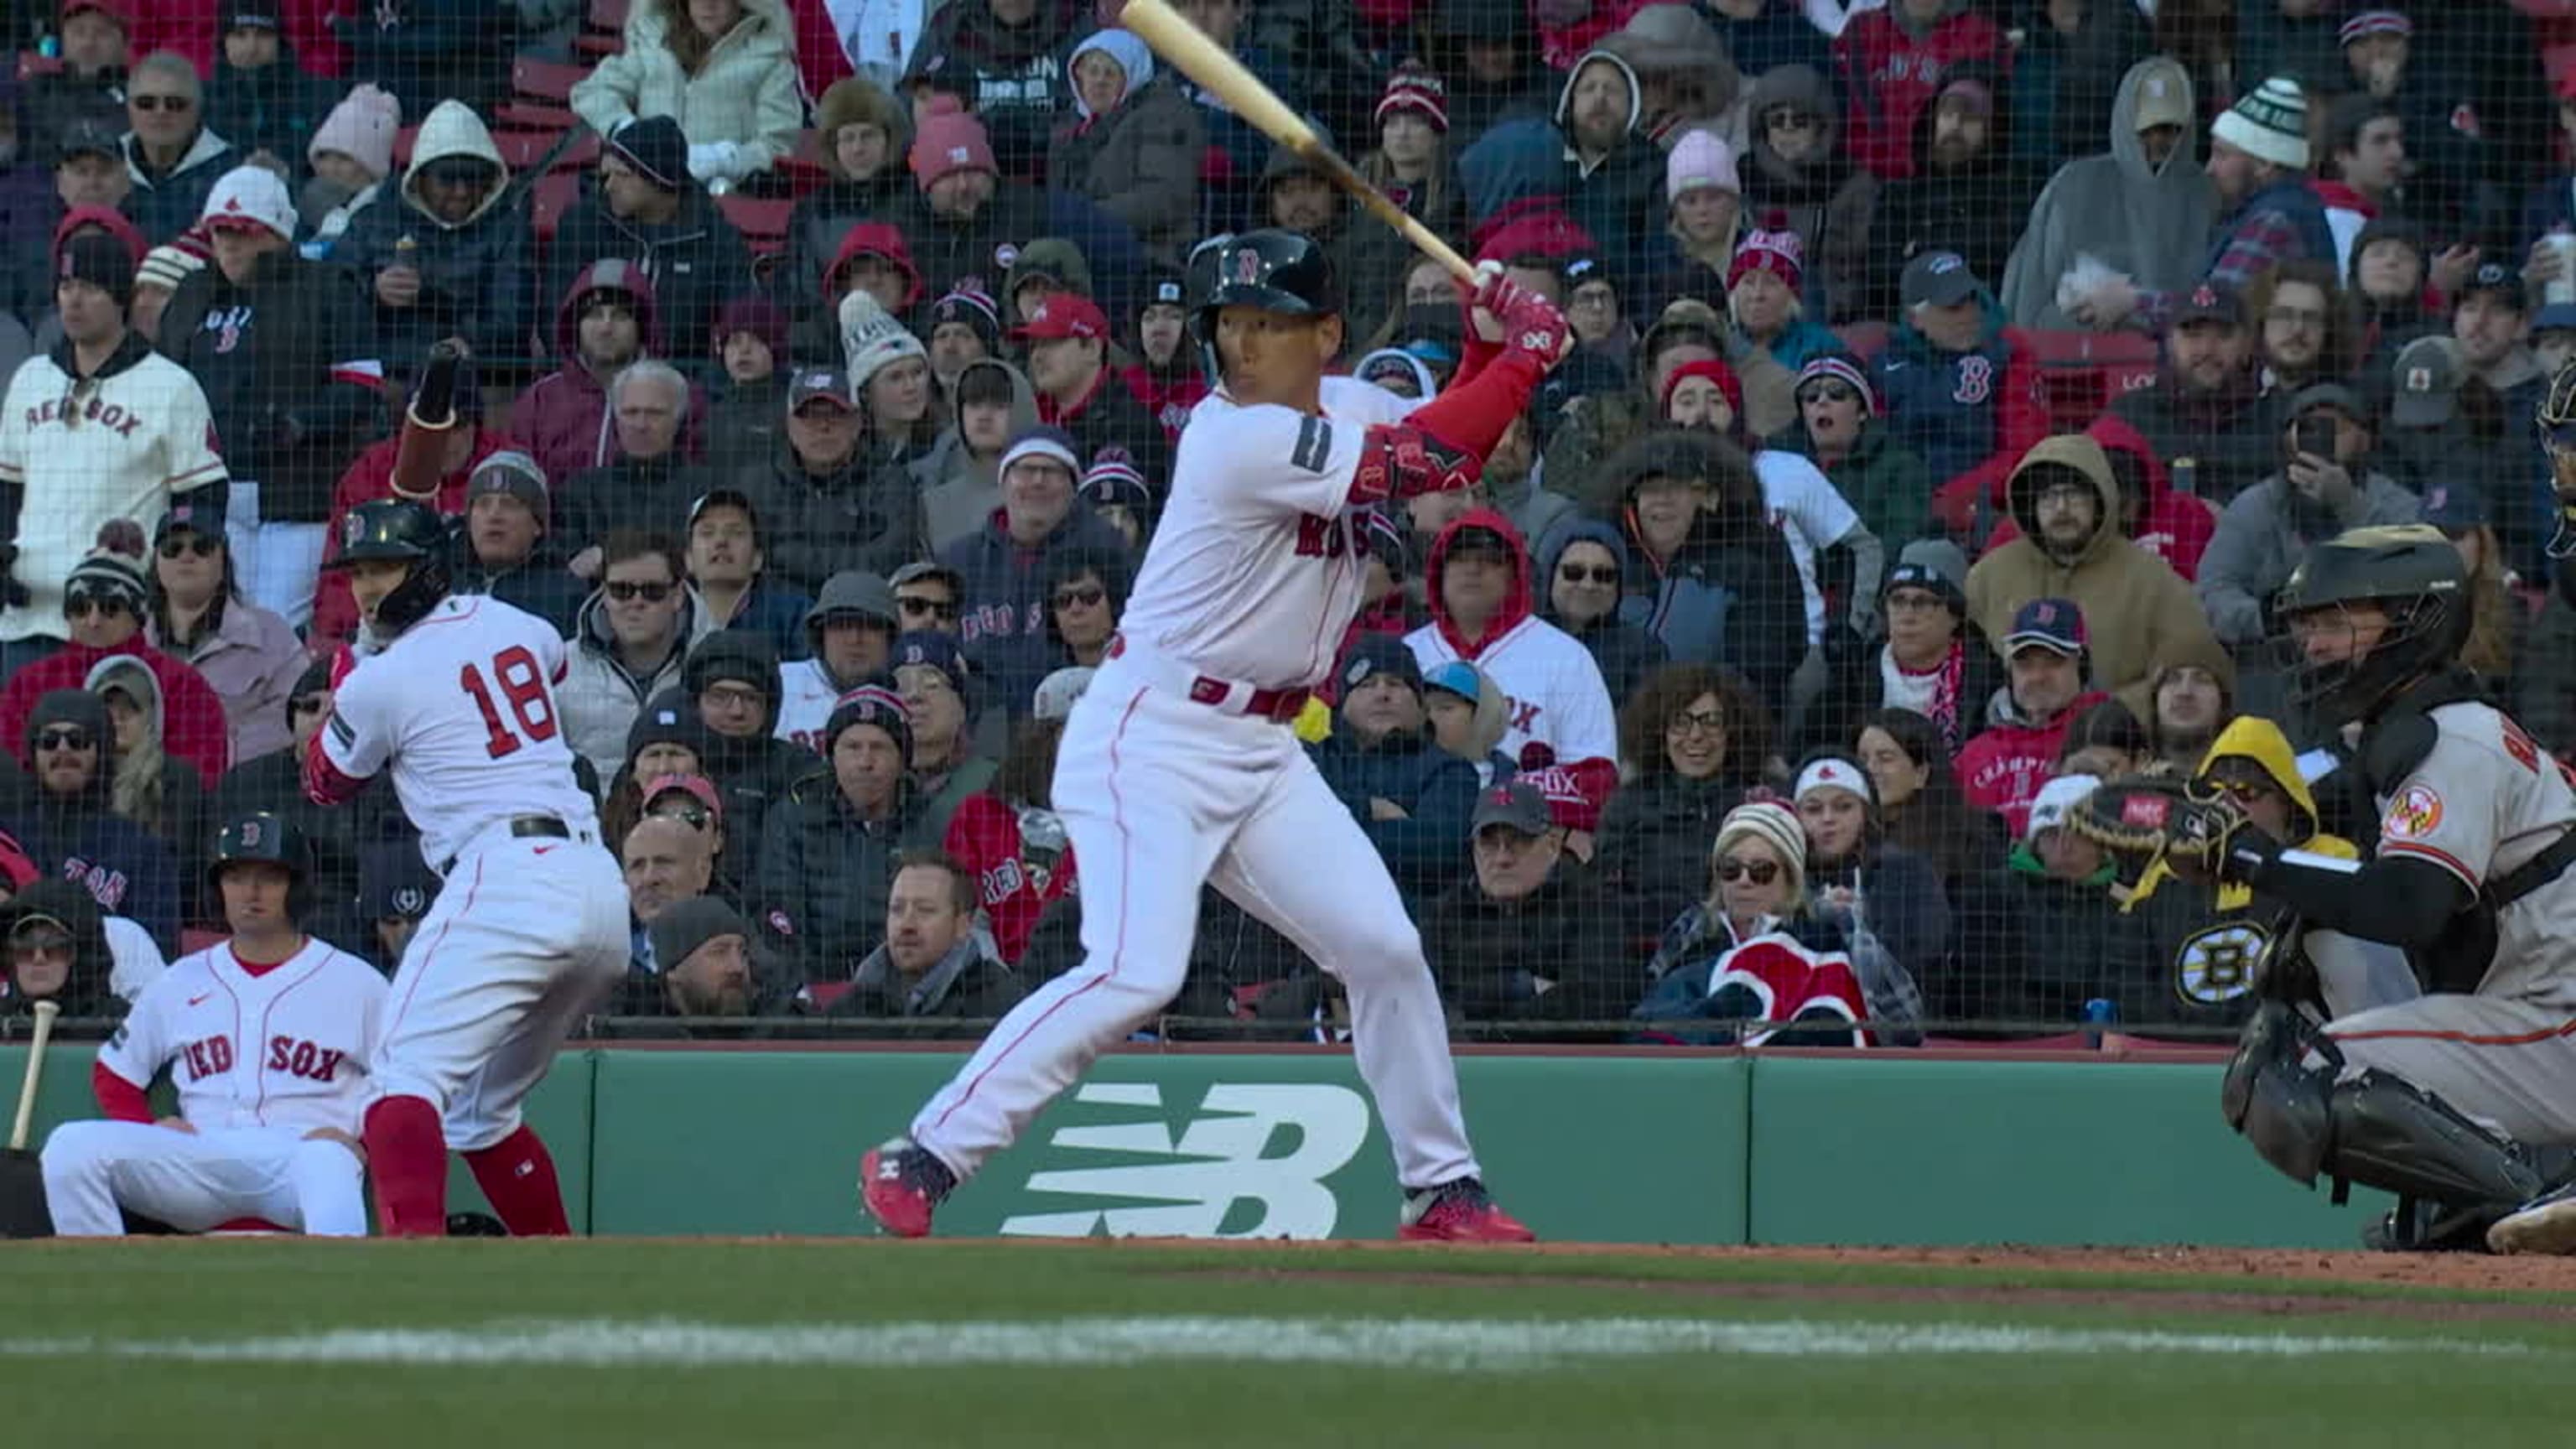 Masataka Yoshida hits first home run for Red Sox